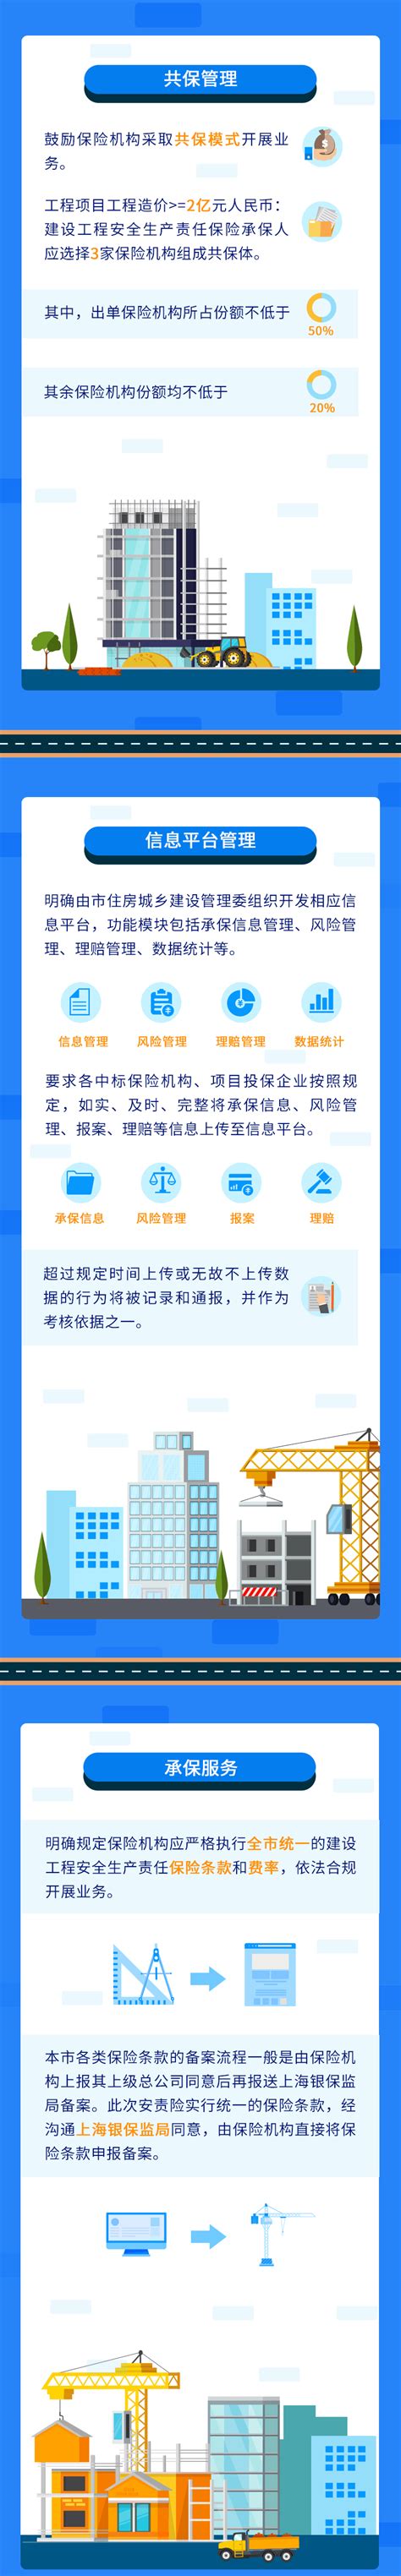 上海市建设信息